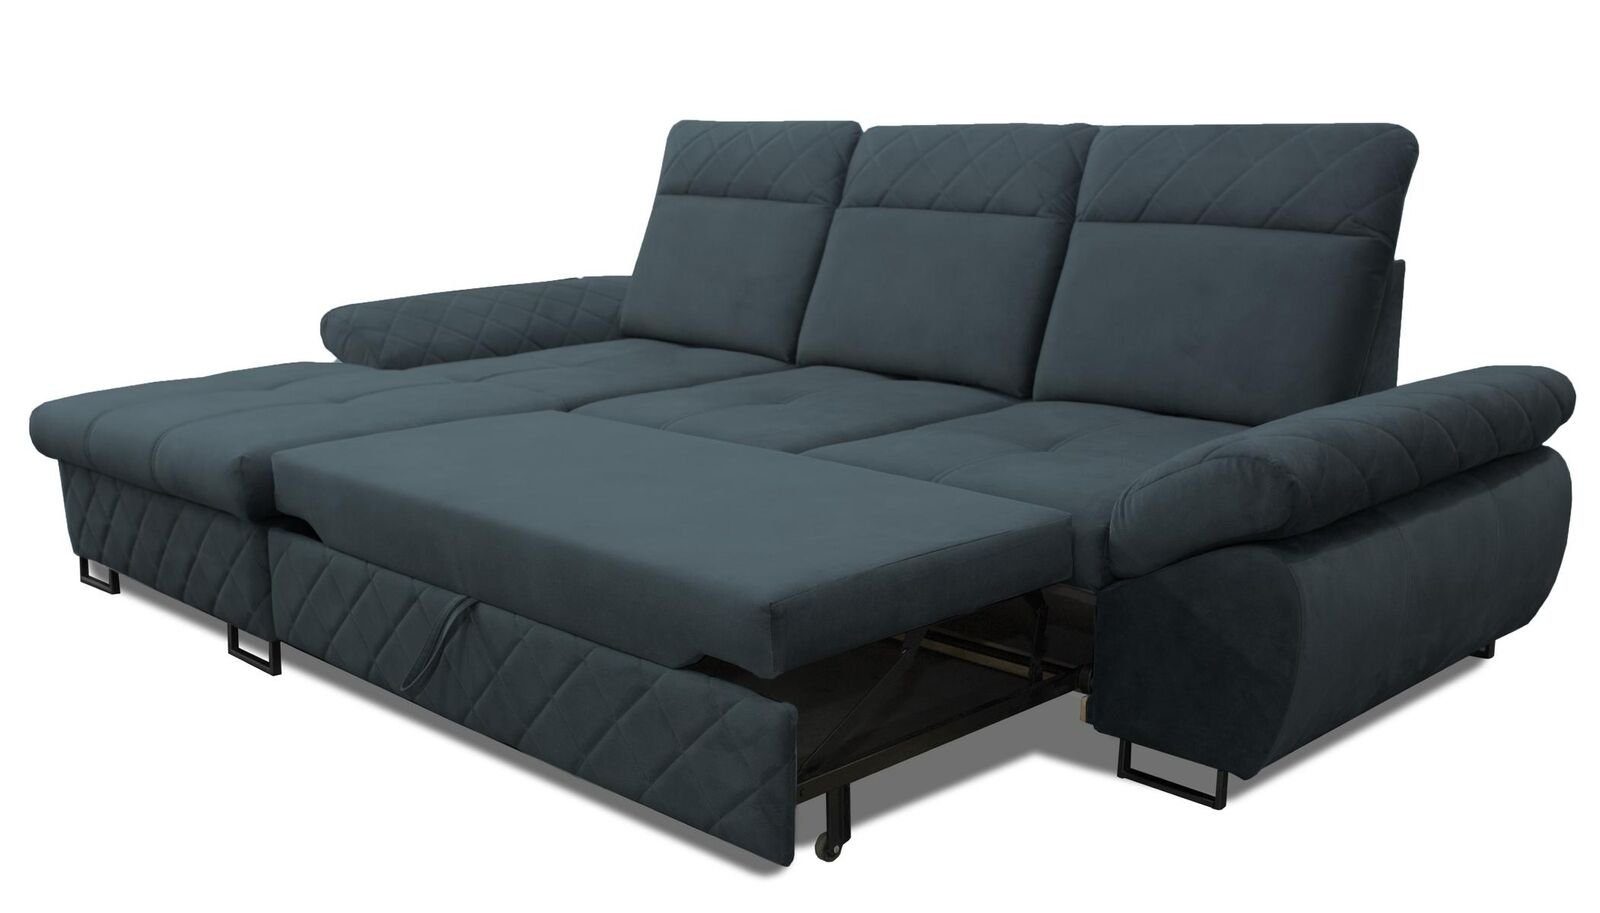 JVmoebel Ecksofa Wohnzimmer Textil Couch Mit Braune Sofas Polstermöbel, Blau Ecksofa Bettfunktion L-Form